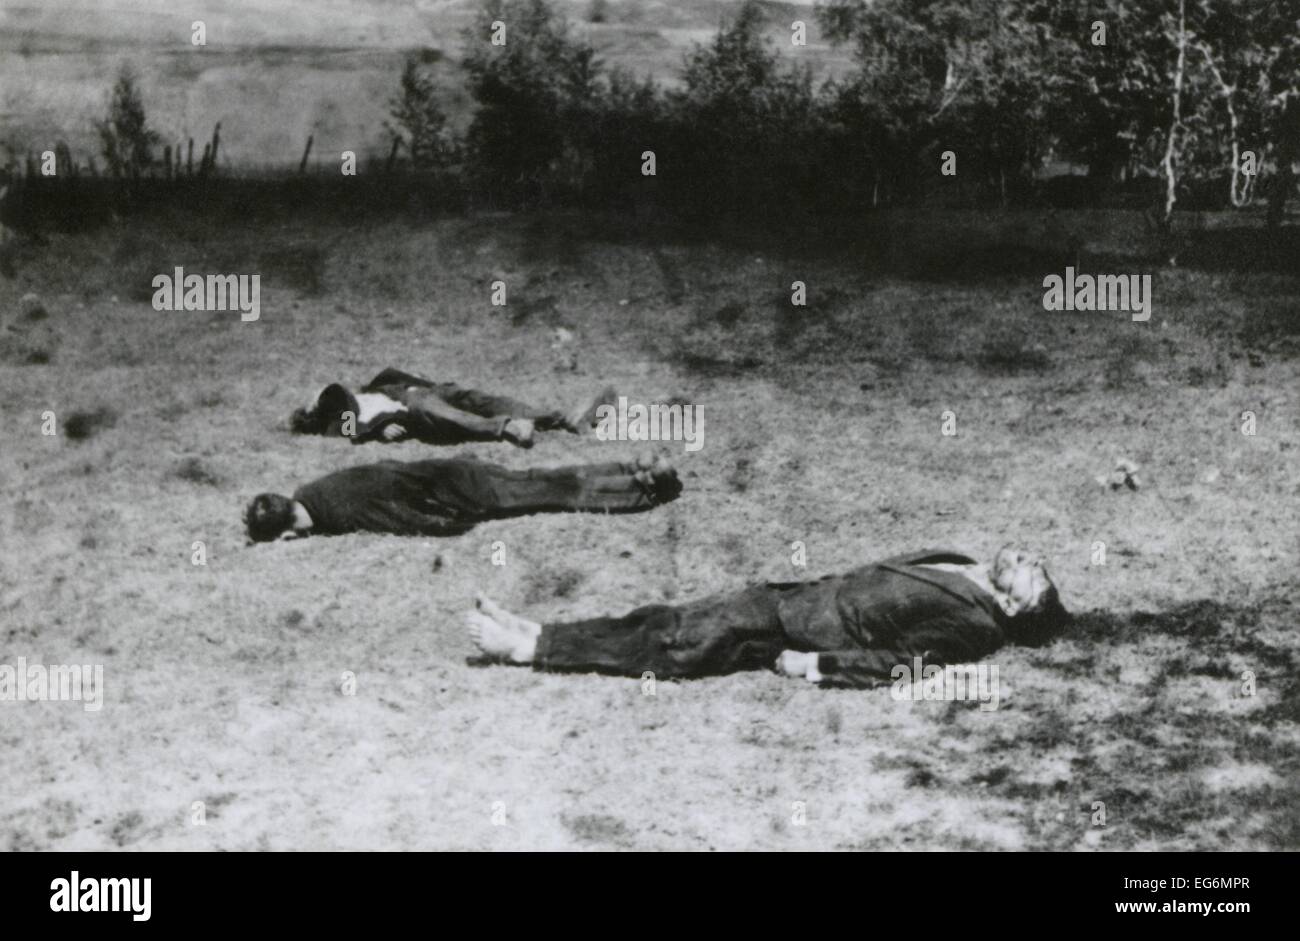 Sowjetische Partisanen während der deutschen Invasion in Russland im Sommer 1941 von deutschen Soldaten erschossen. Dem 2. Weltkrieg. Dem 2. Weltkrieg. Stockfoto